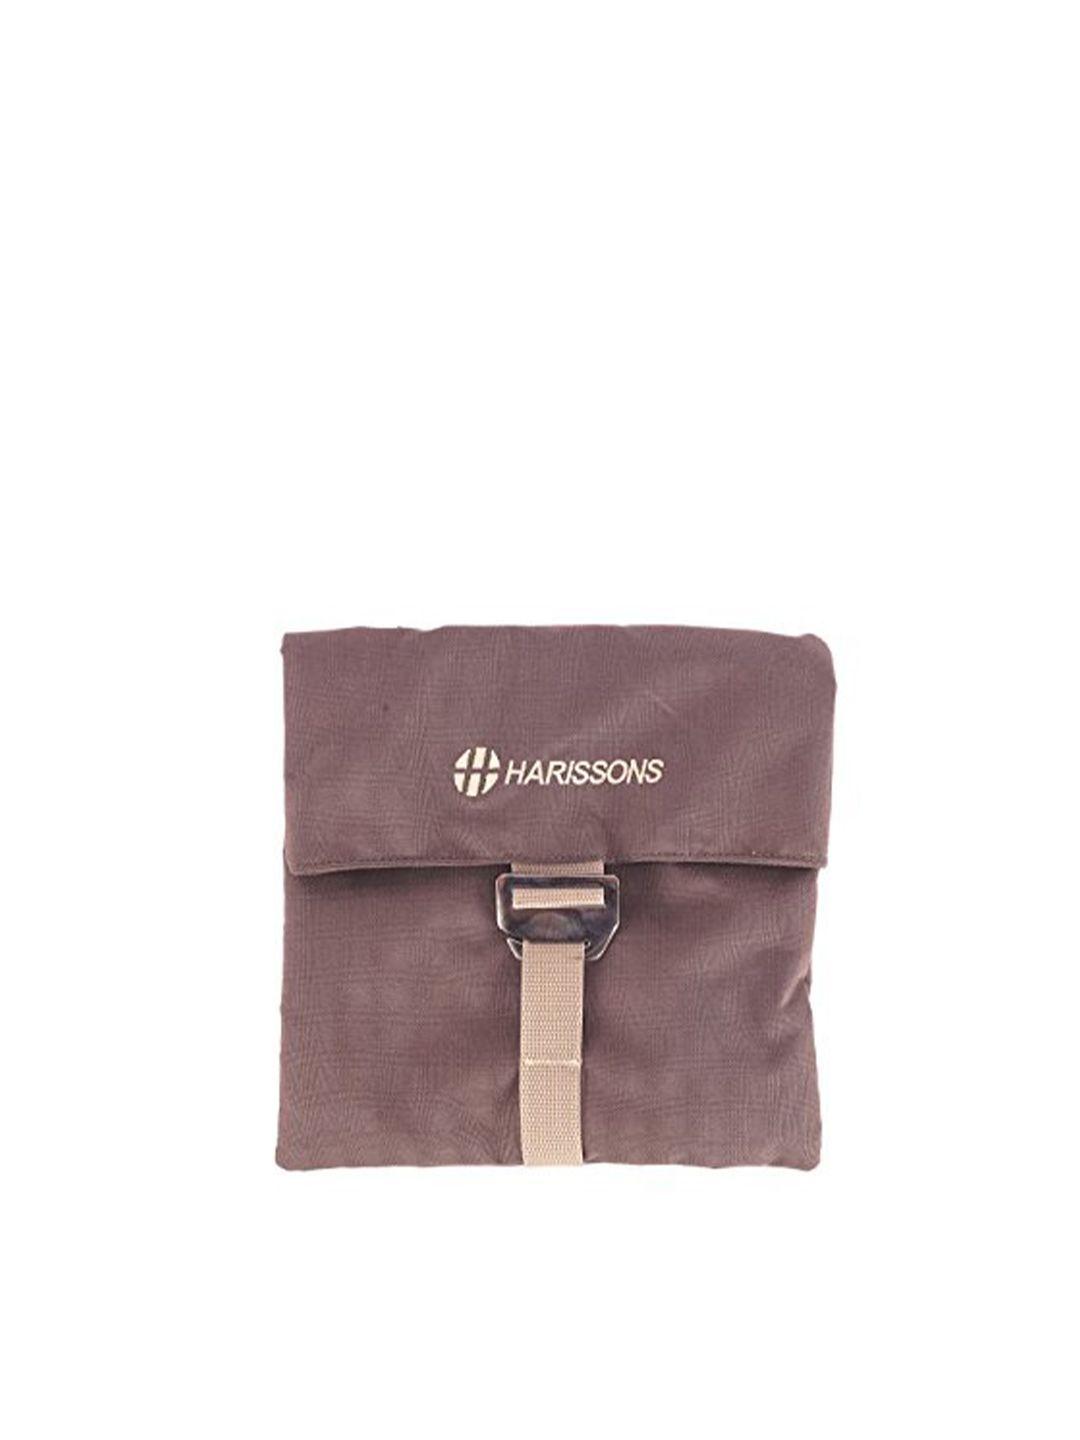 harissons unisex brown & beige printed messenger bag